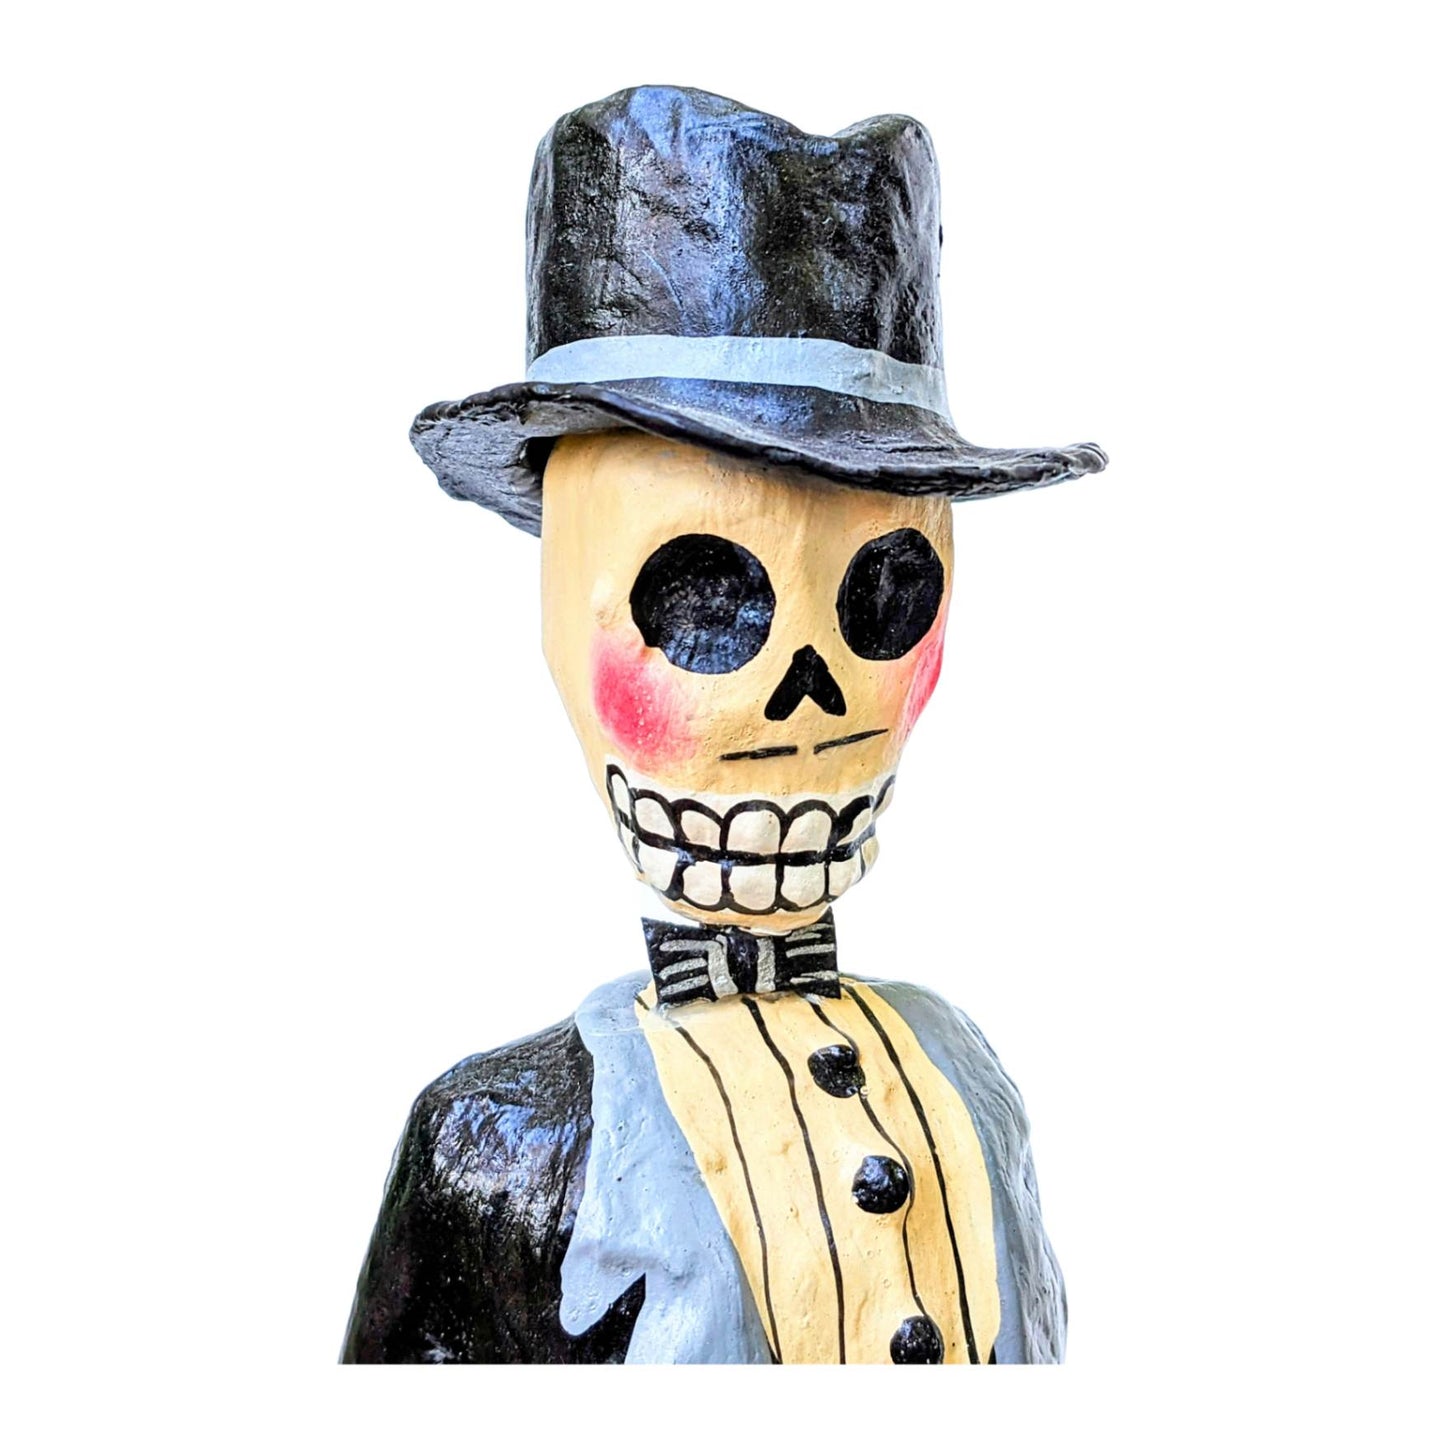 Handsome Gentleman Skeleton or "Catrin"